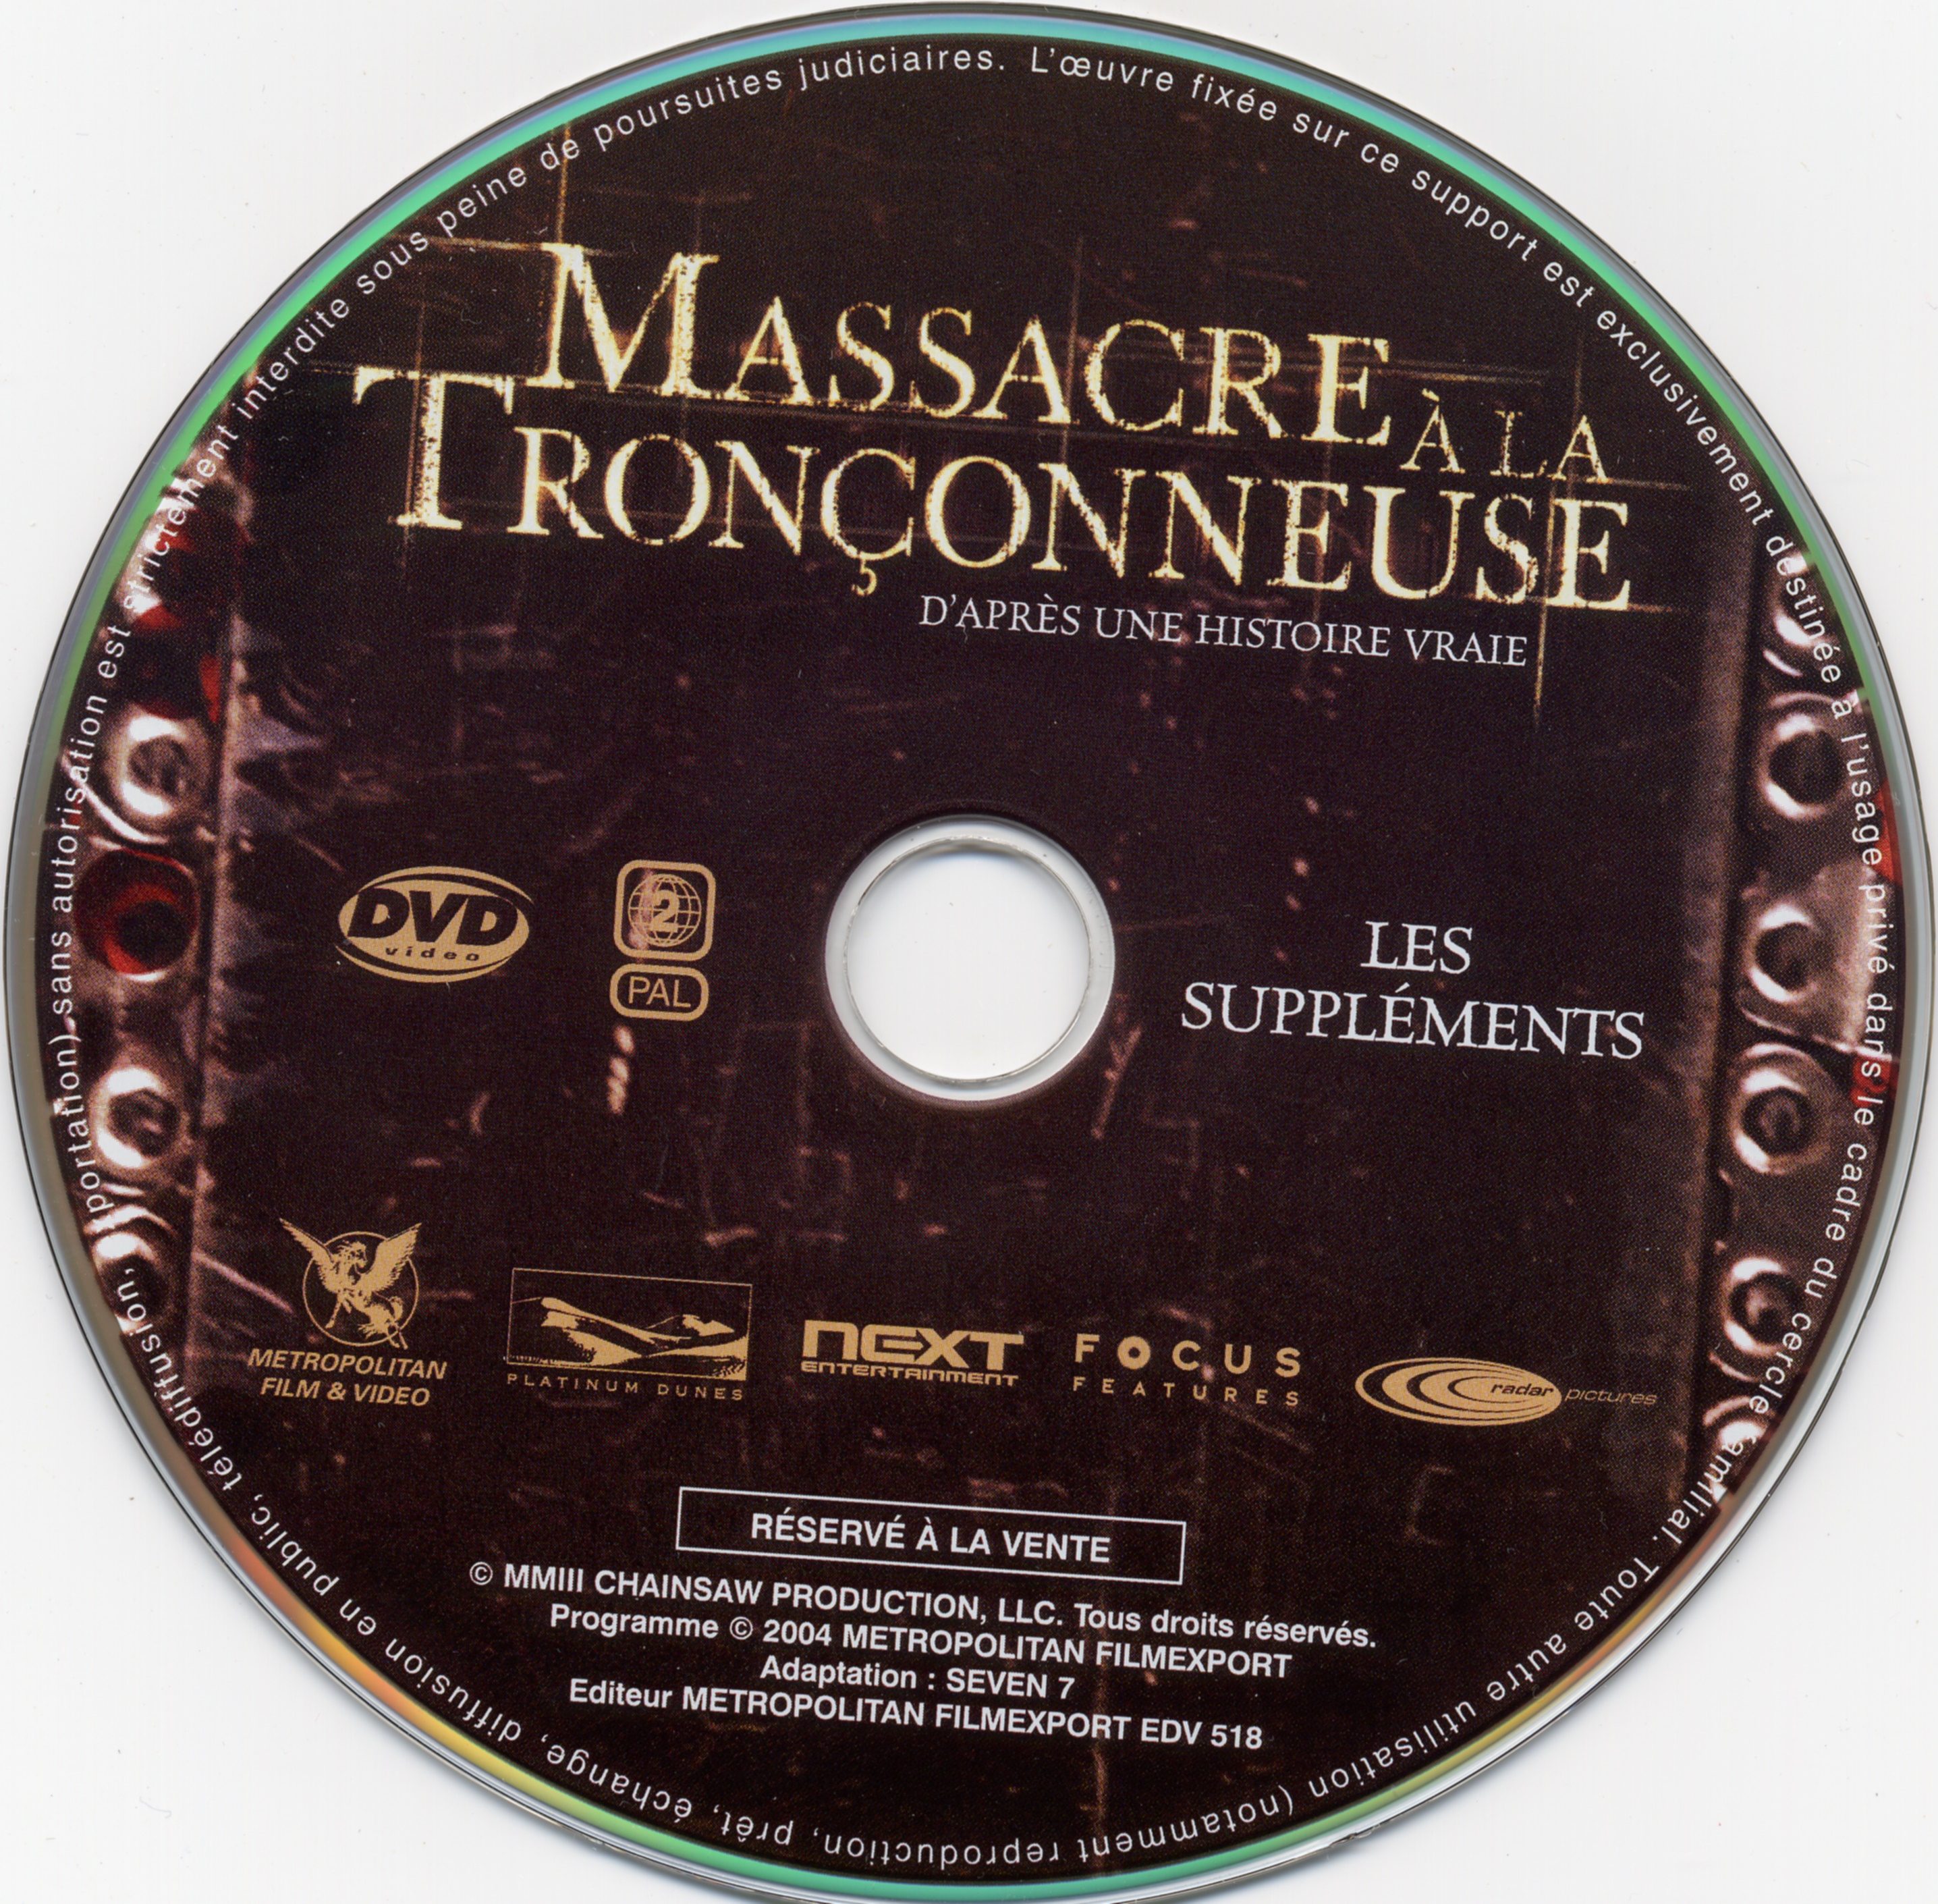 Massacre a la tronconneuse (2003) (BONUS)